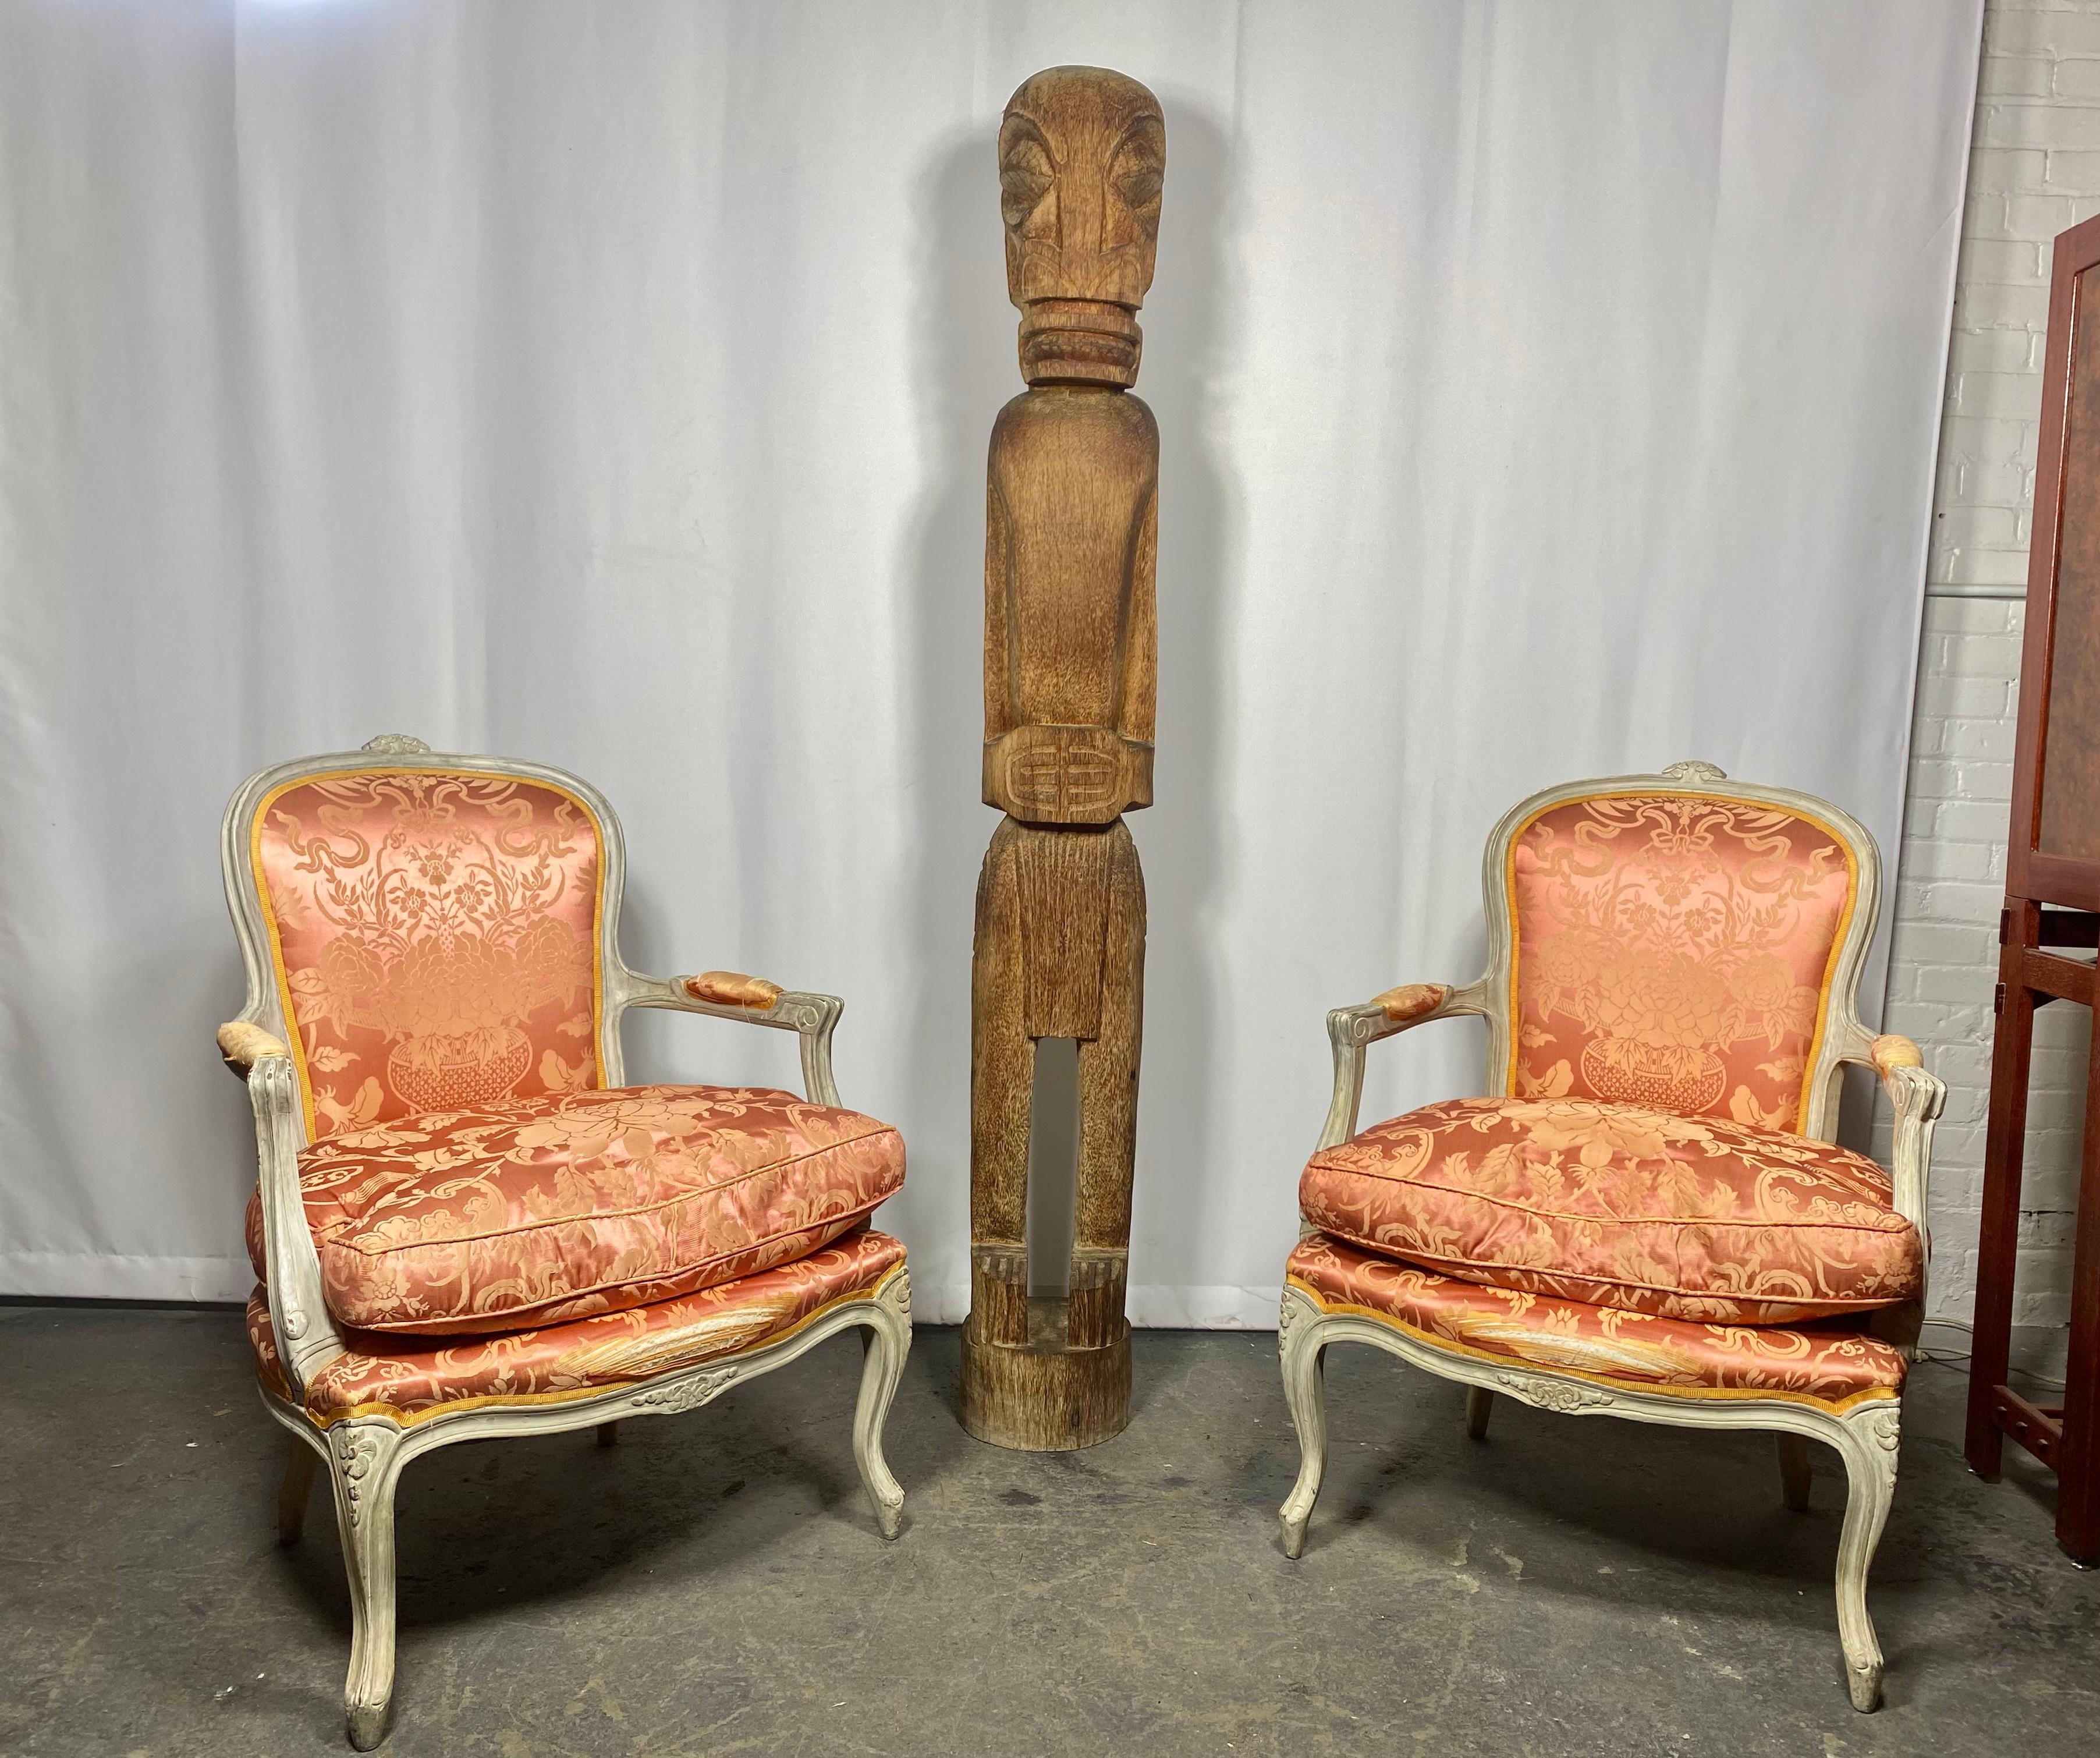 Paire de superbes bergères sculptées d'époque Louis XV. Chaque chaise est dotée d'un cadre en bois peint à la main, d'un dossier incurvé et d'une crête florale sculptée. Ce dossier s'intègre parfaitement dans les accoudoirs ouverts à volutes, avec